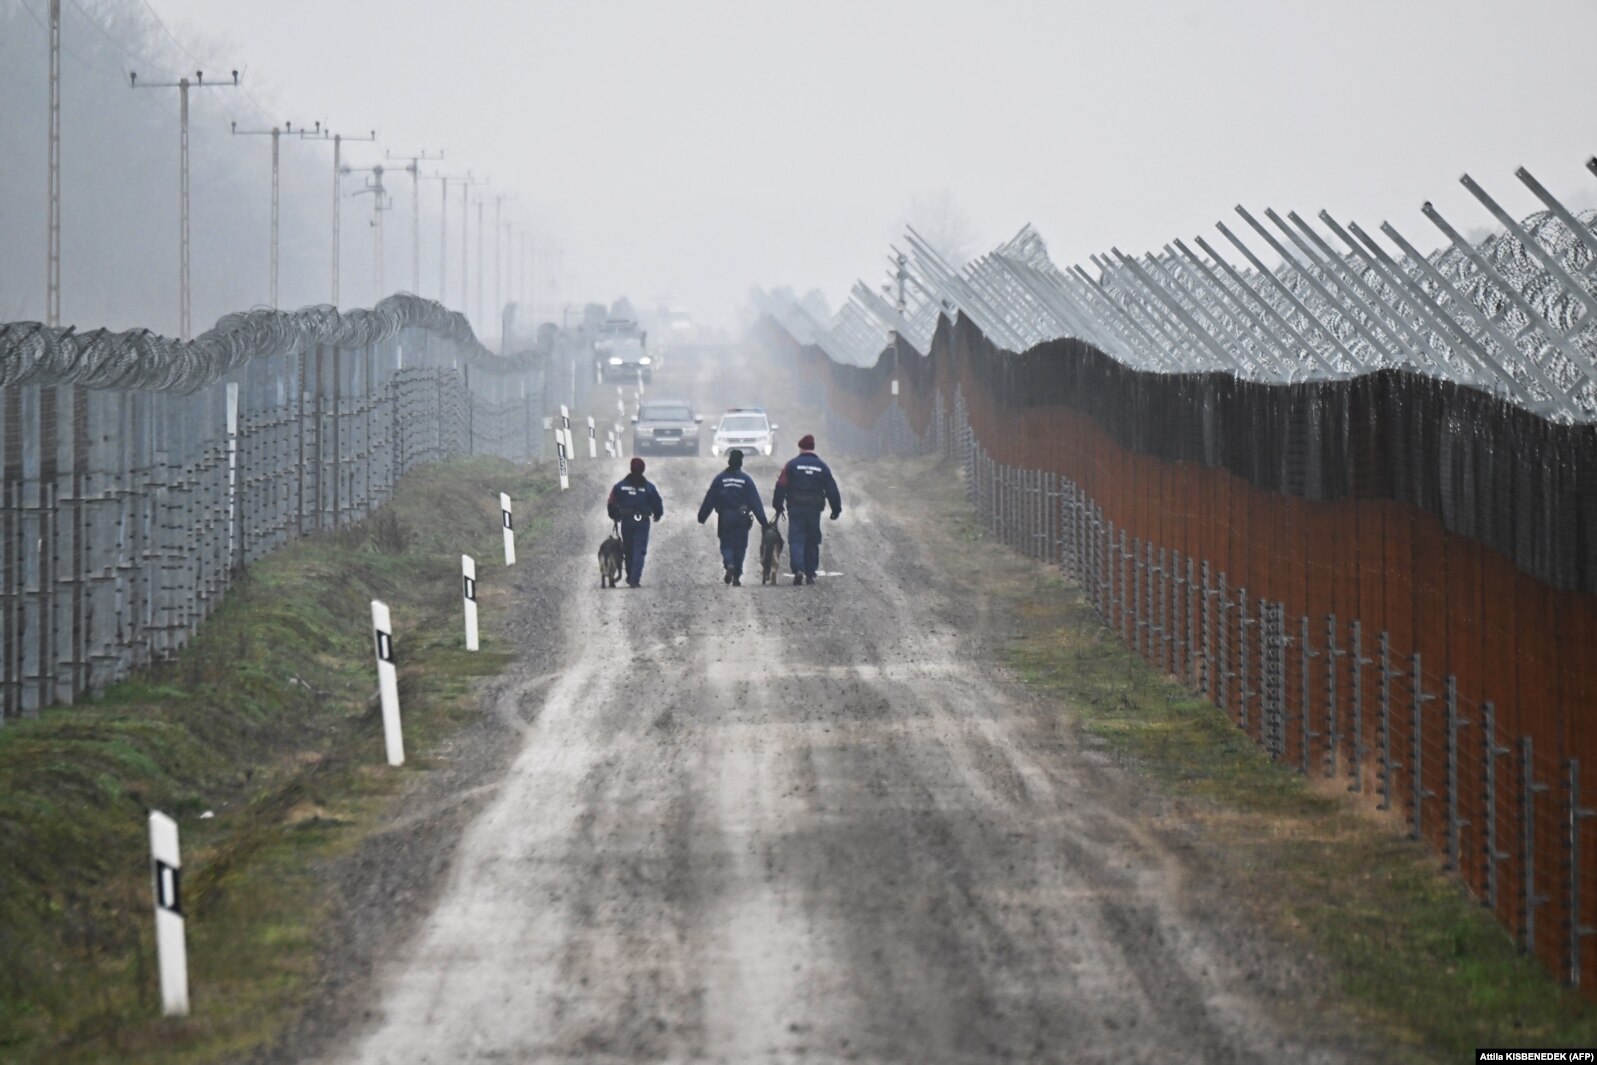 Policët kufitarë hungarezë me qen duke patrulluar përgjatë një gardhi me tela gjemborë të pajisur me kamera termike në kufirin me Serbinë, 15 dhjetor 2022.